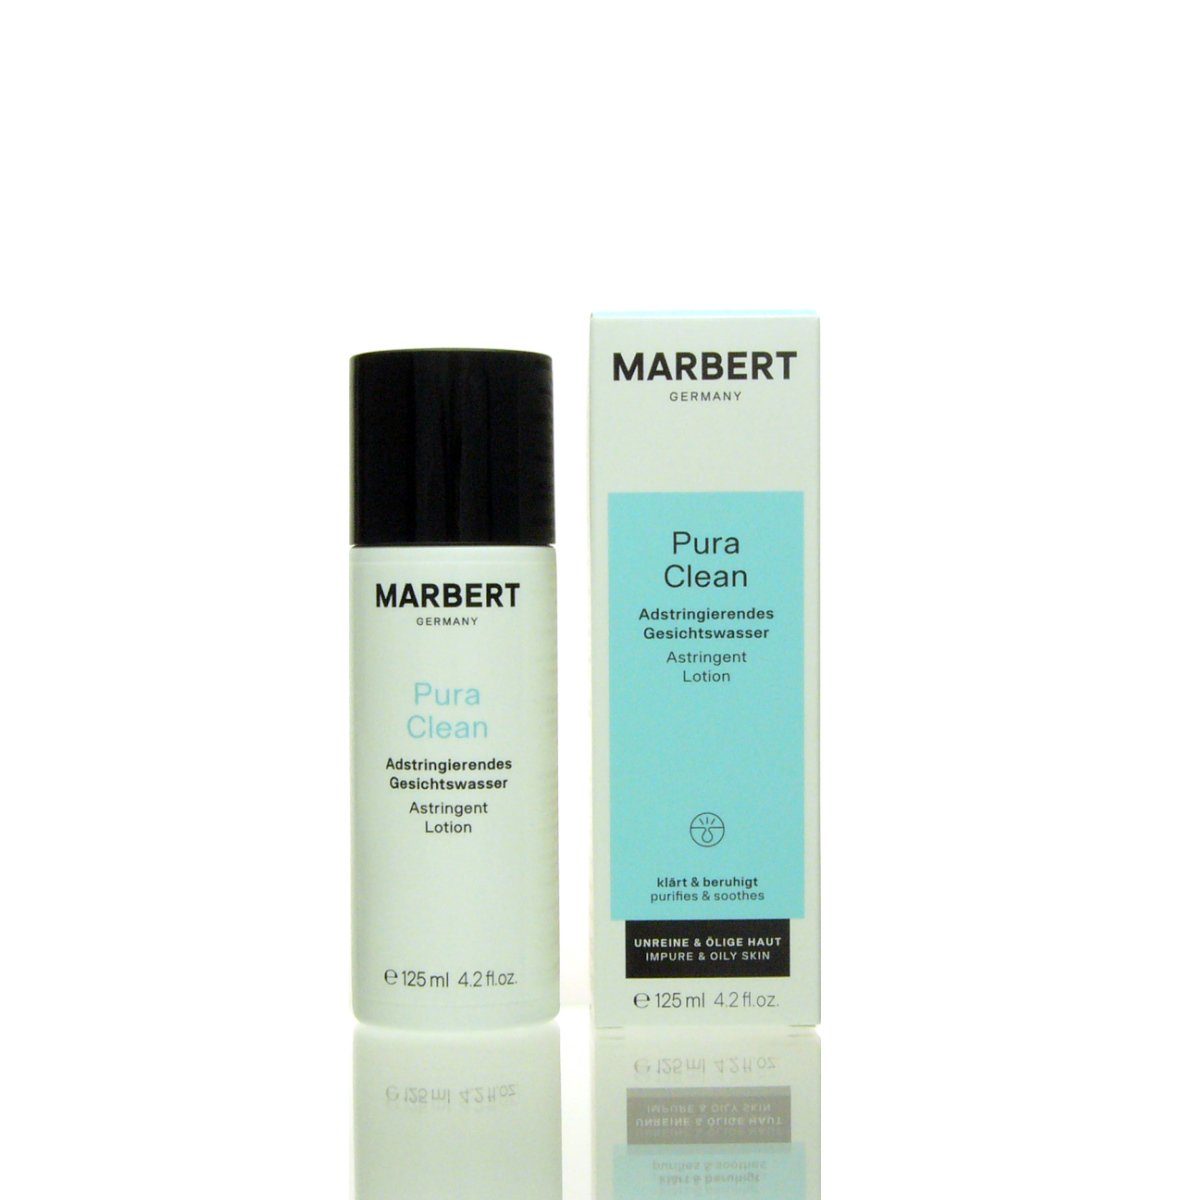 Marbert Gesichtswasser Pure Gesichts-Reinigungsfluid 125 ml, Marbert Clean Reinigendes Gesichtswasser Regulierendes